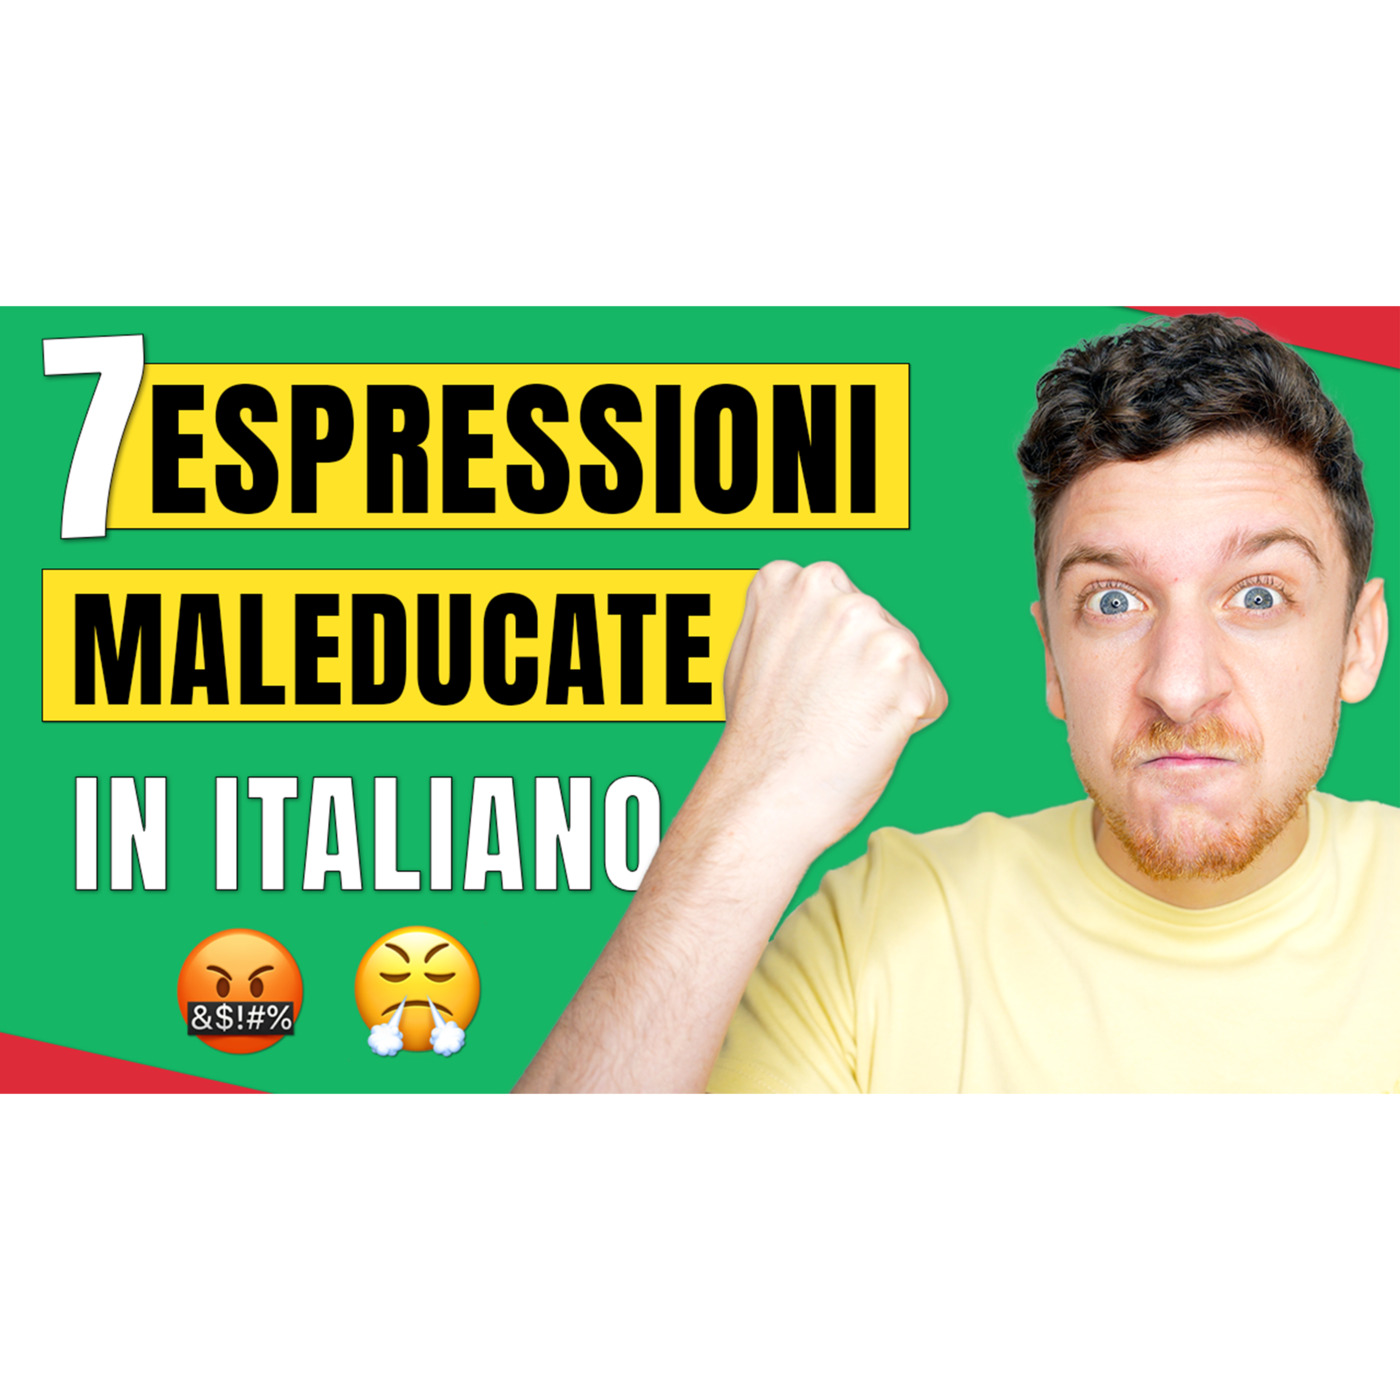 Episode Capisco Tutto Ma Non Riesco Ancora A Parlare Imparare Litaliano